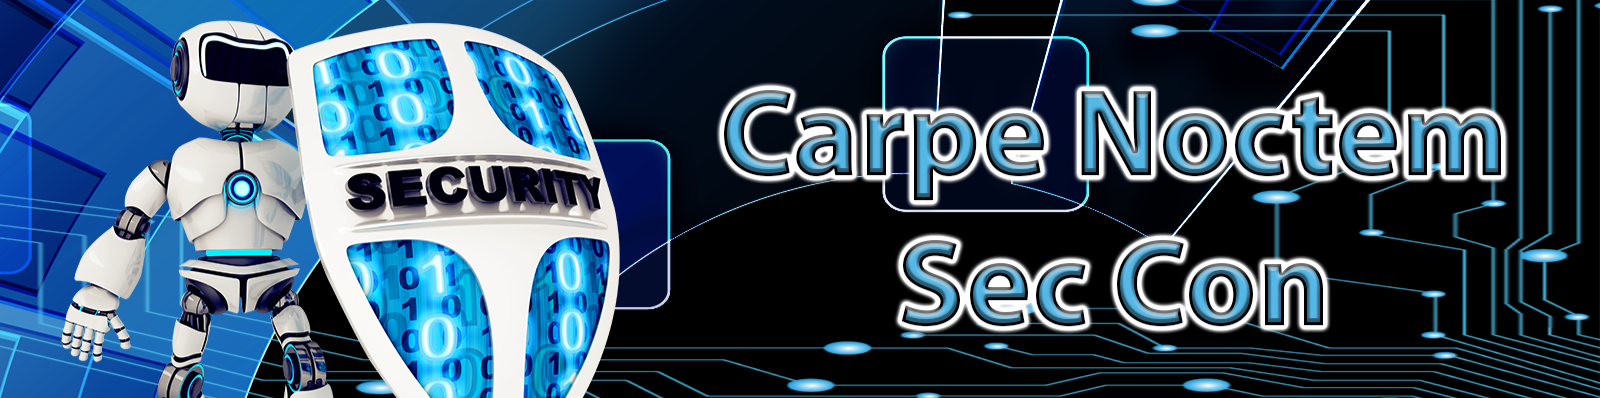 carpe-header